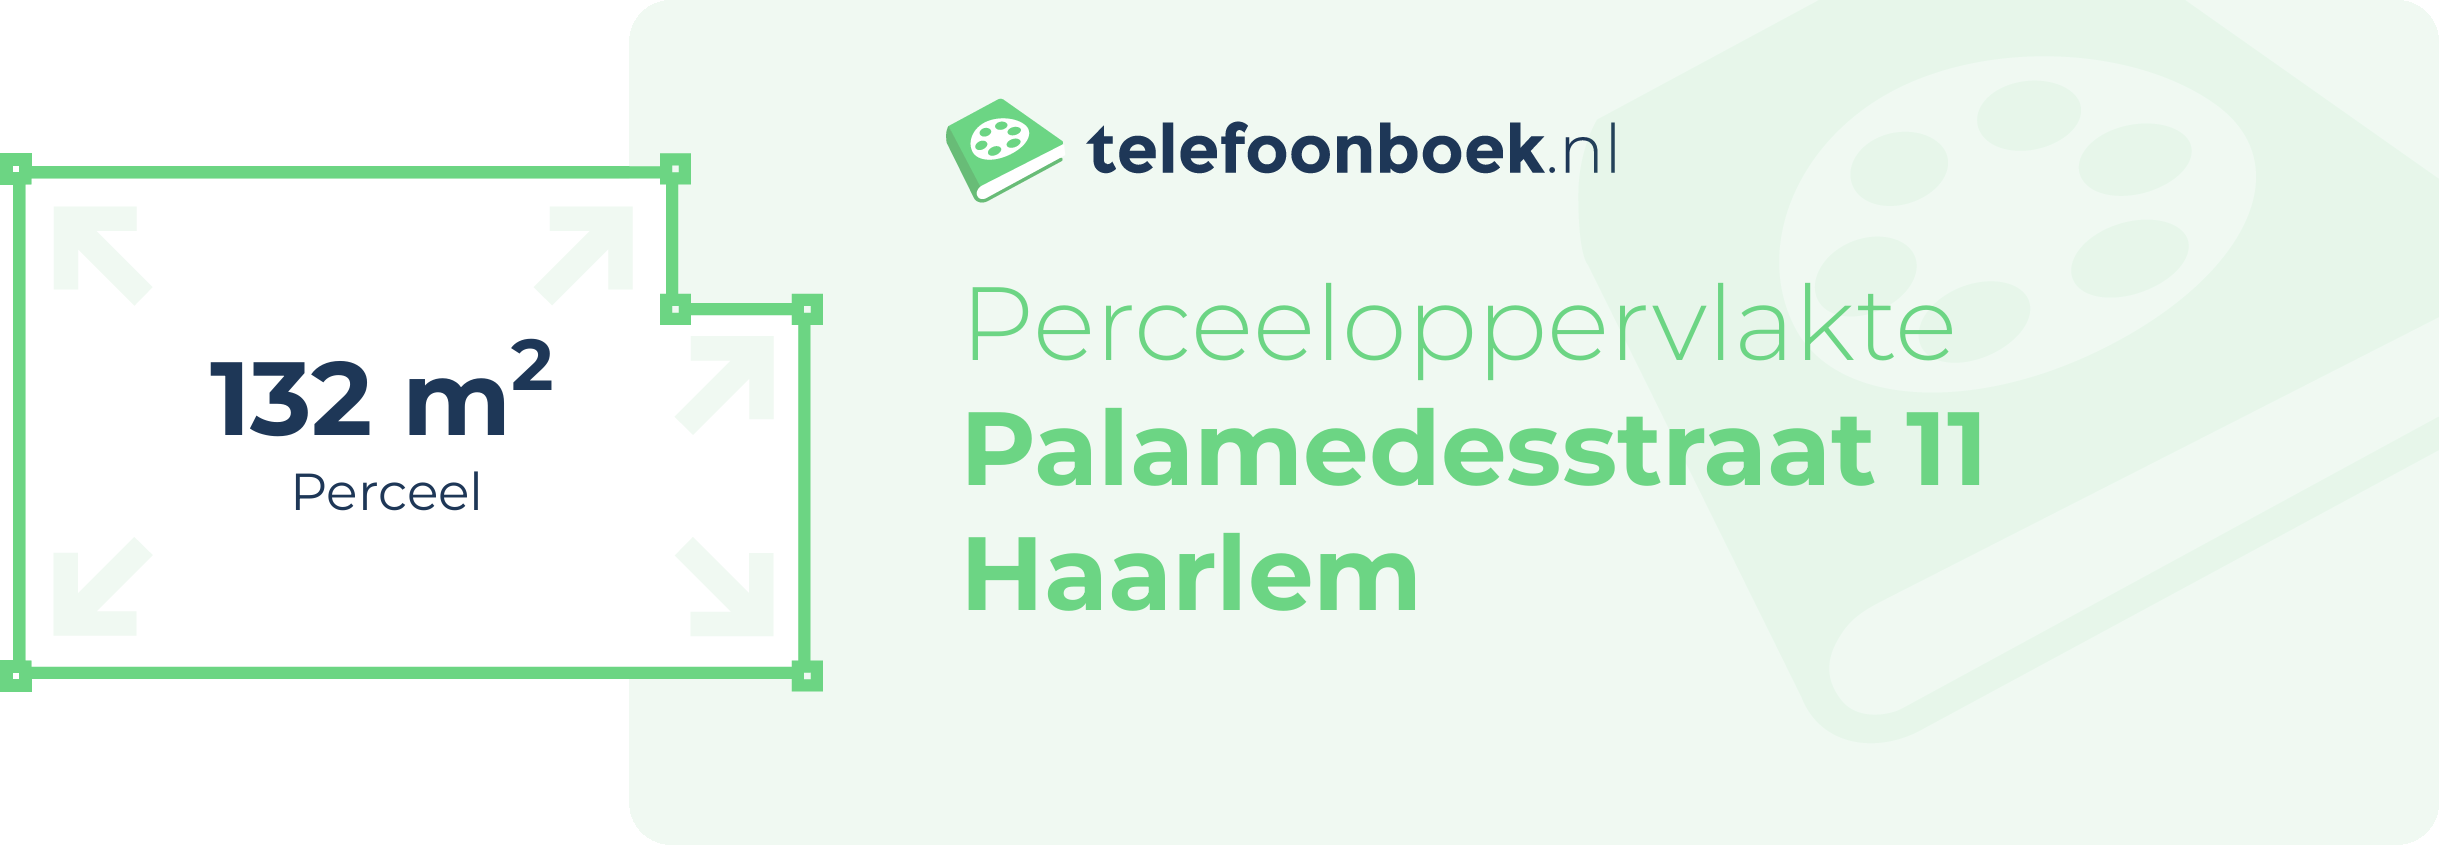 Perceeloppervlakte Palamedesstraat 11 Haarlem